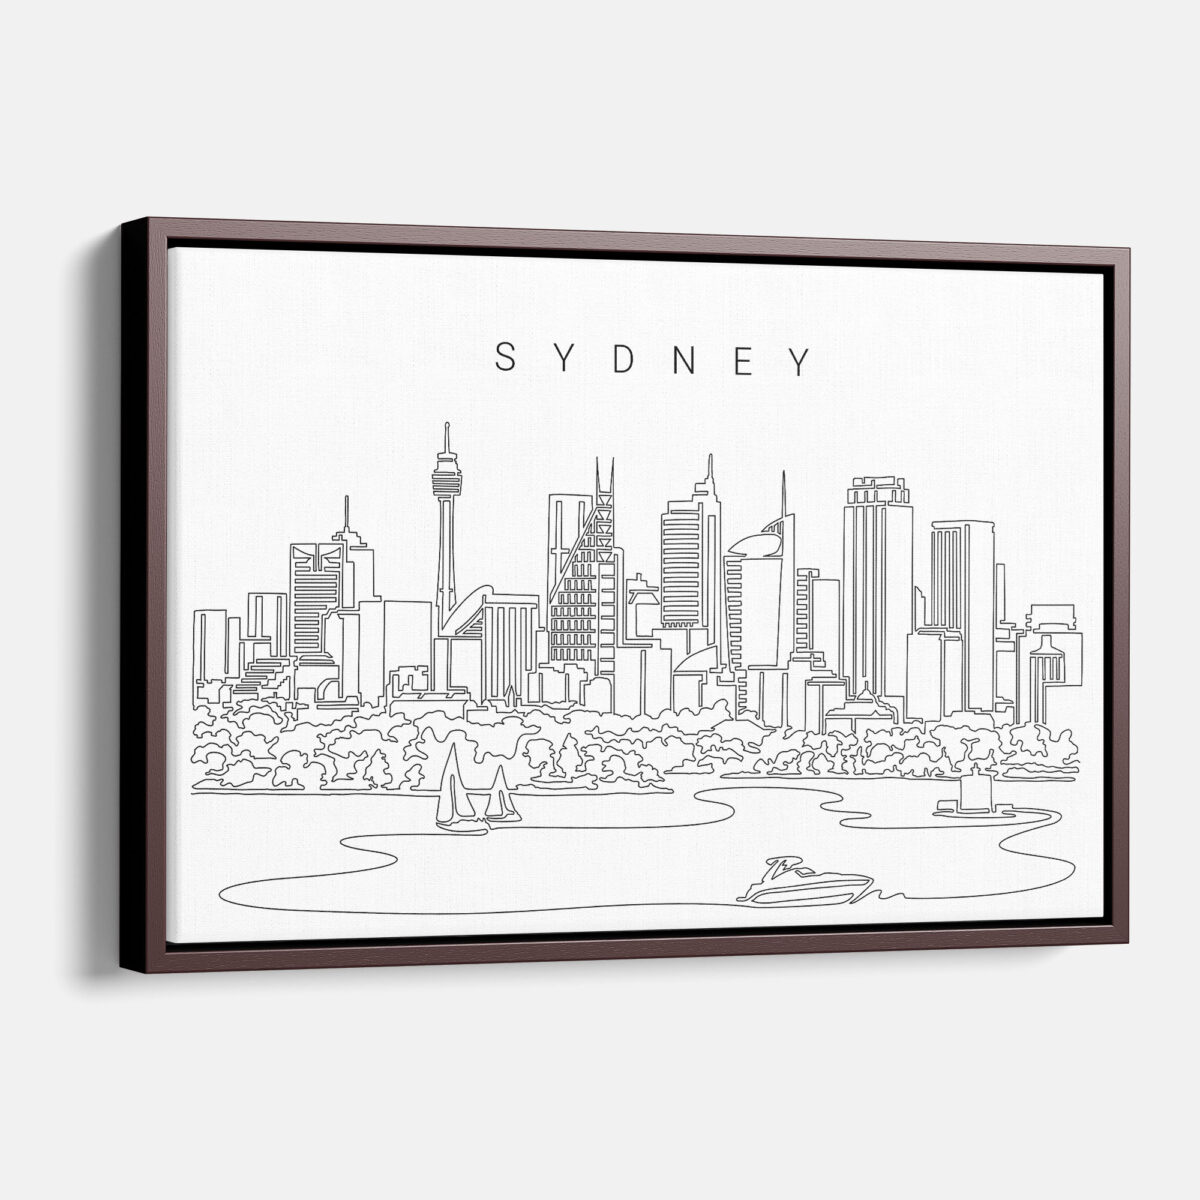 Framed Sydney Skyline Canvas Print - Main - Light